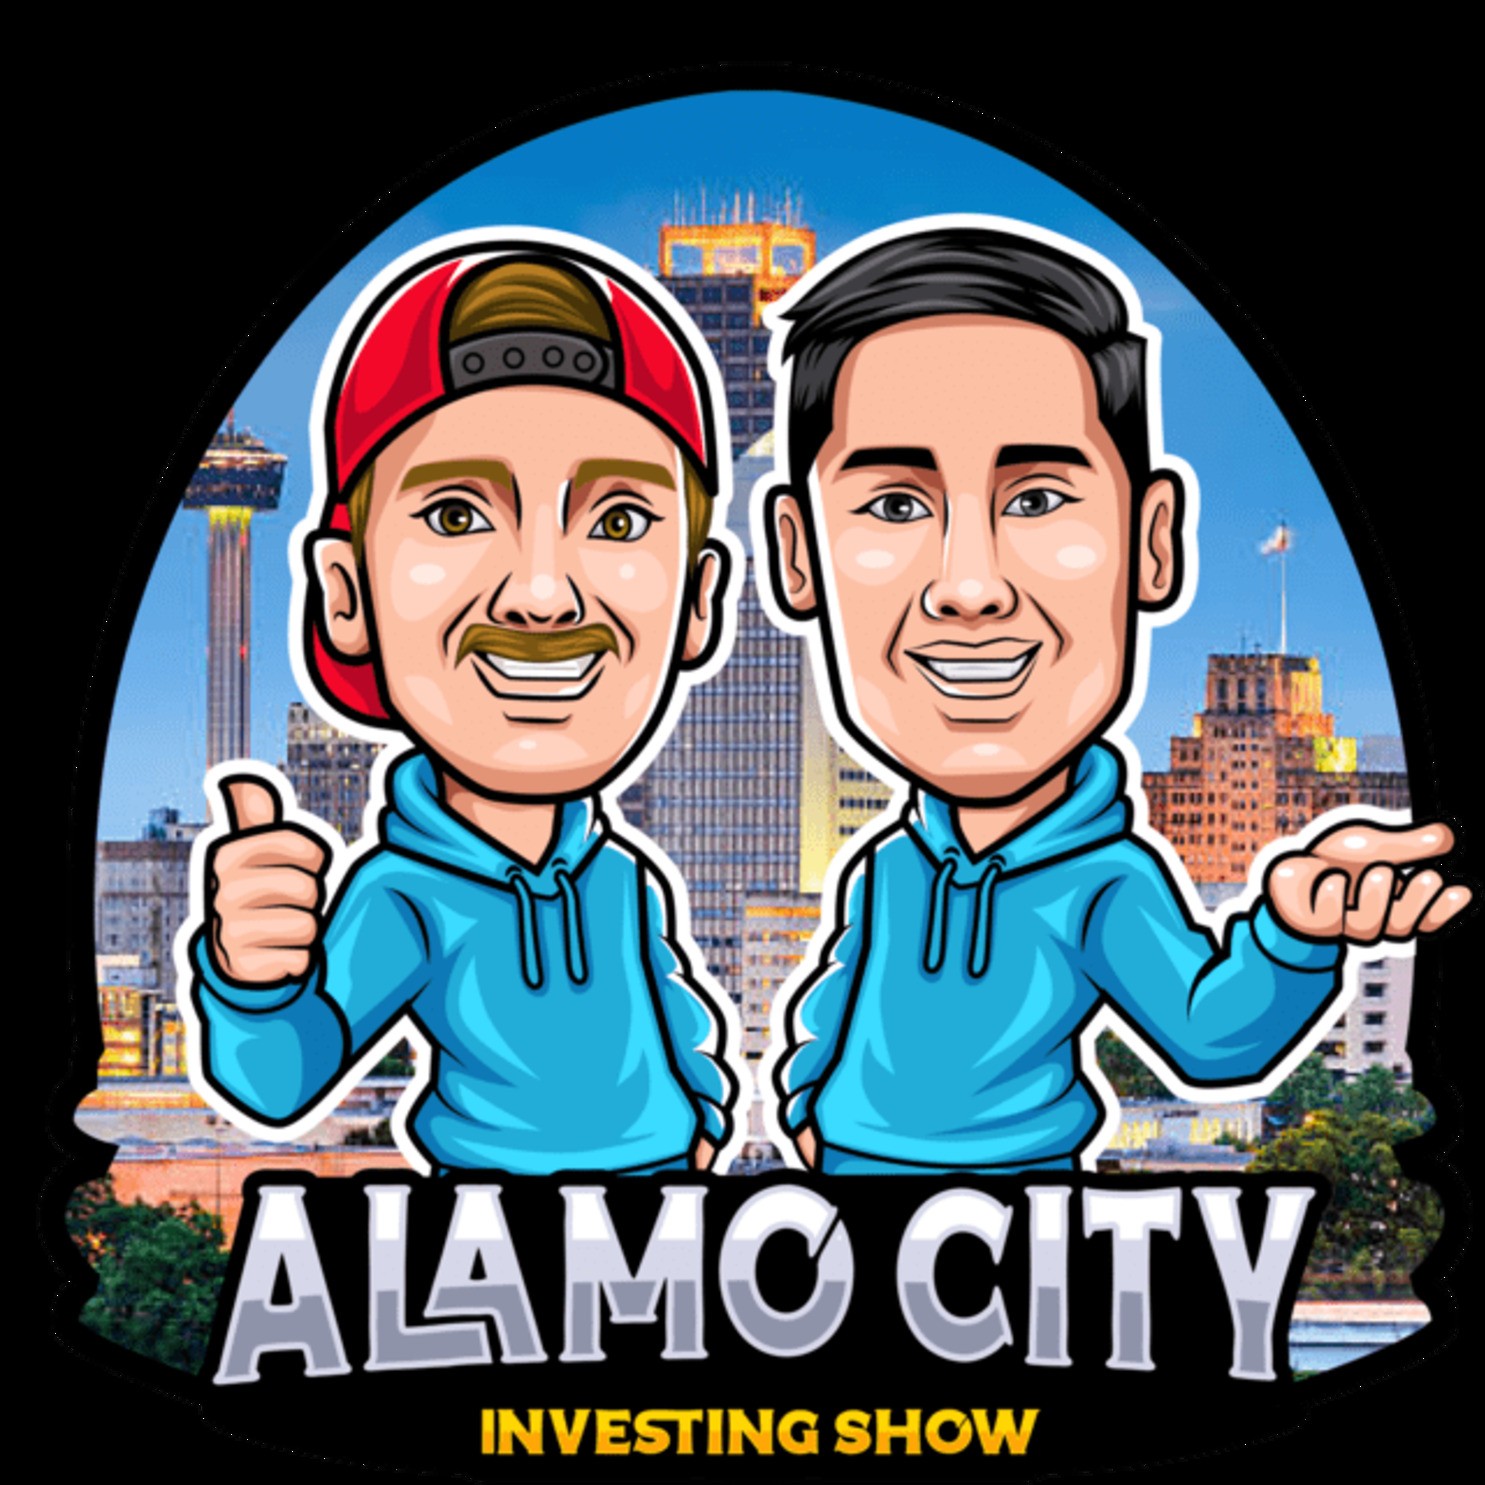 Alamo City Investing Show